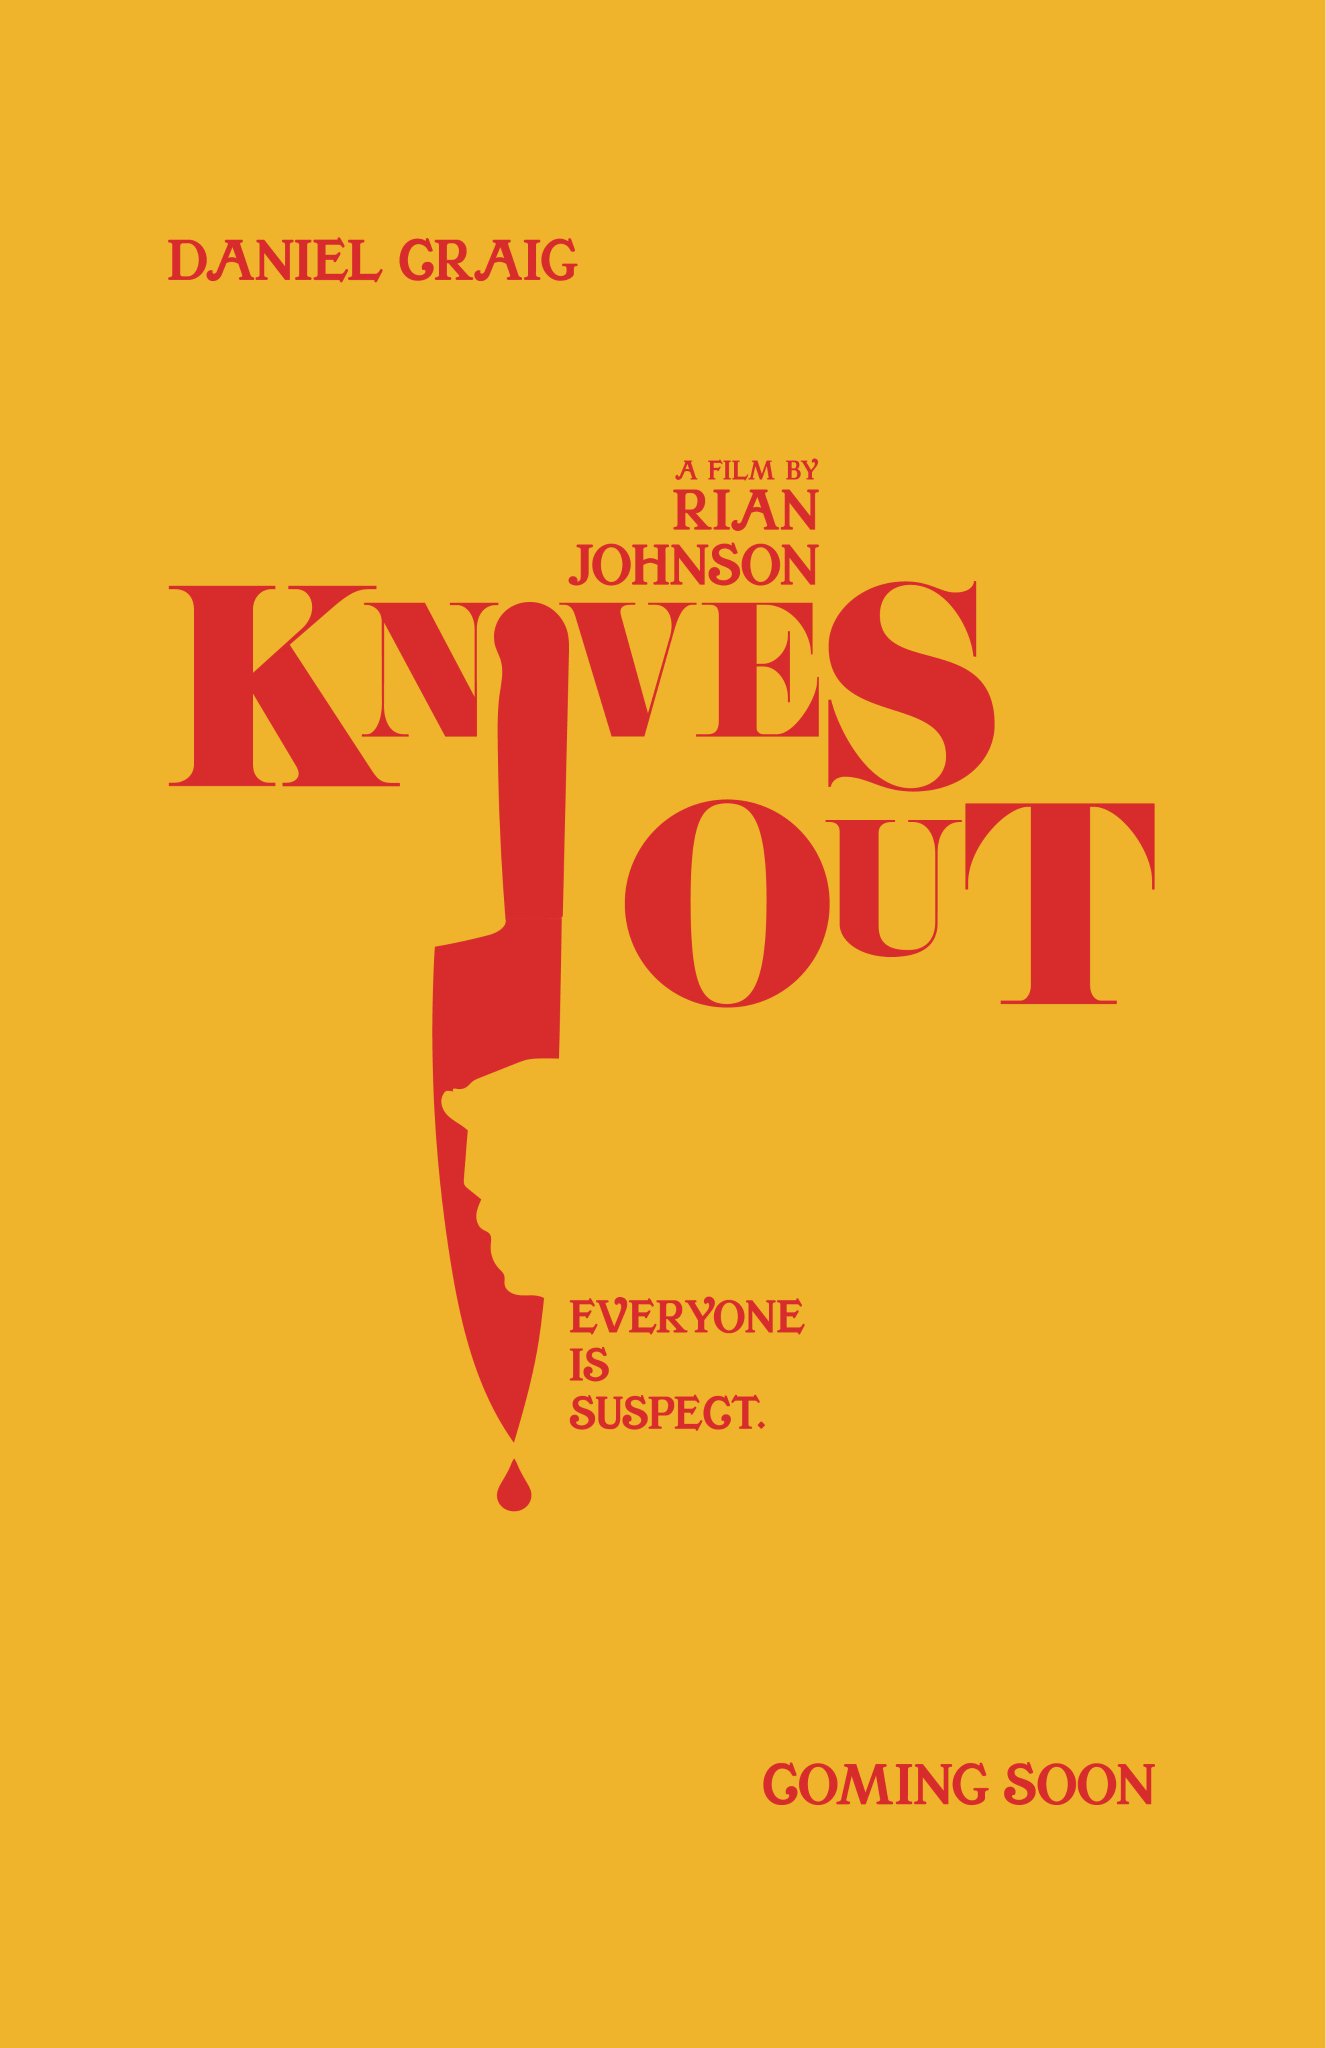 knives-out-2019--daniel-craig-chris-evans